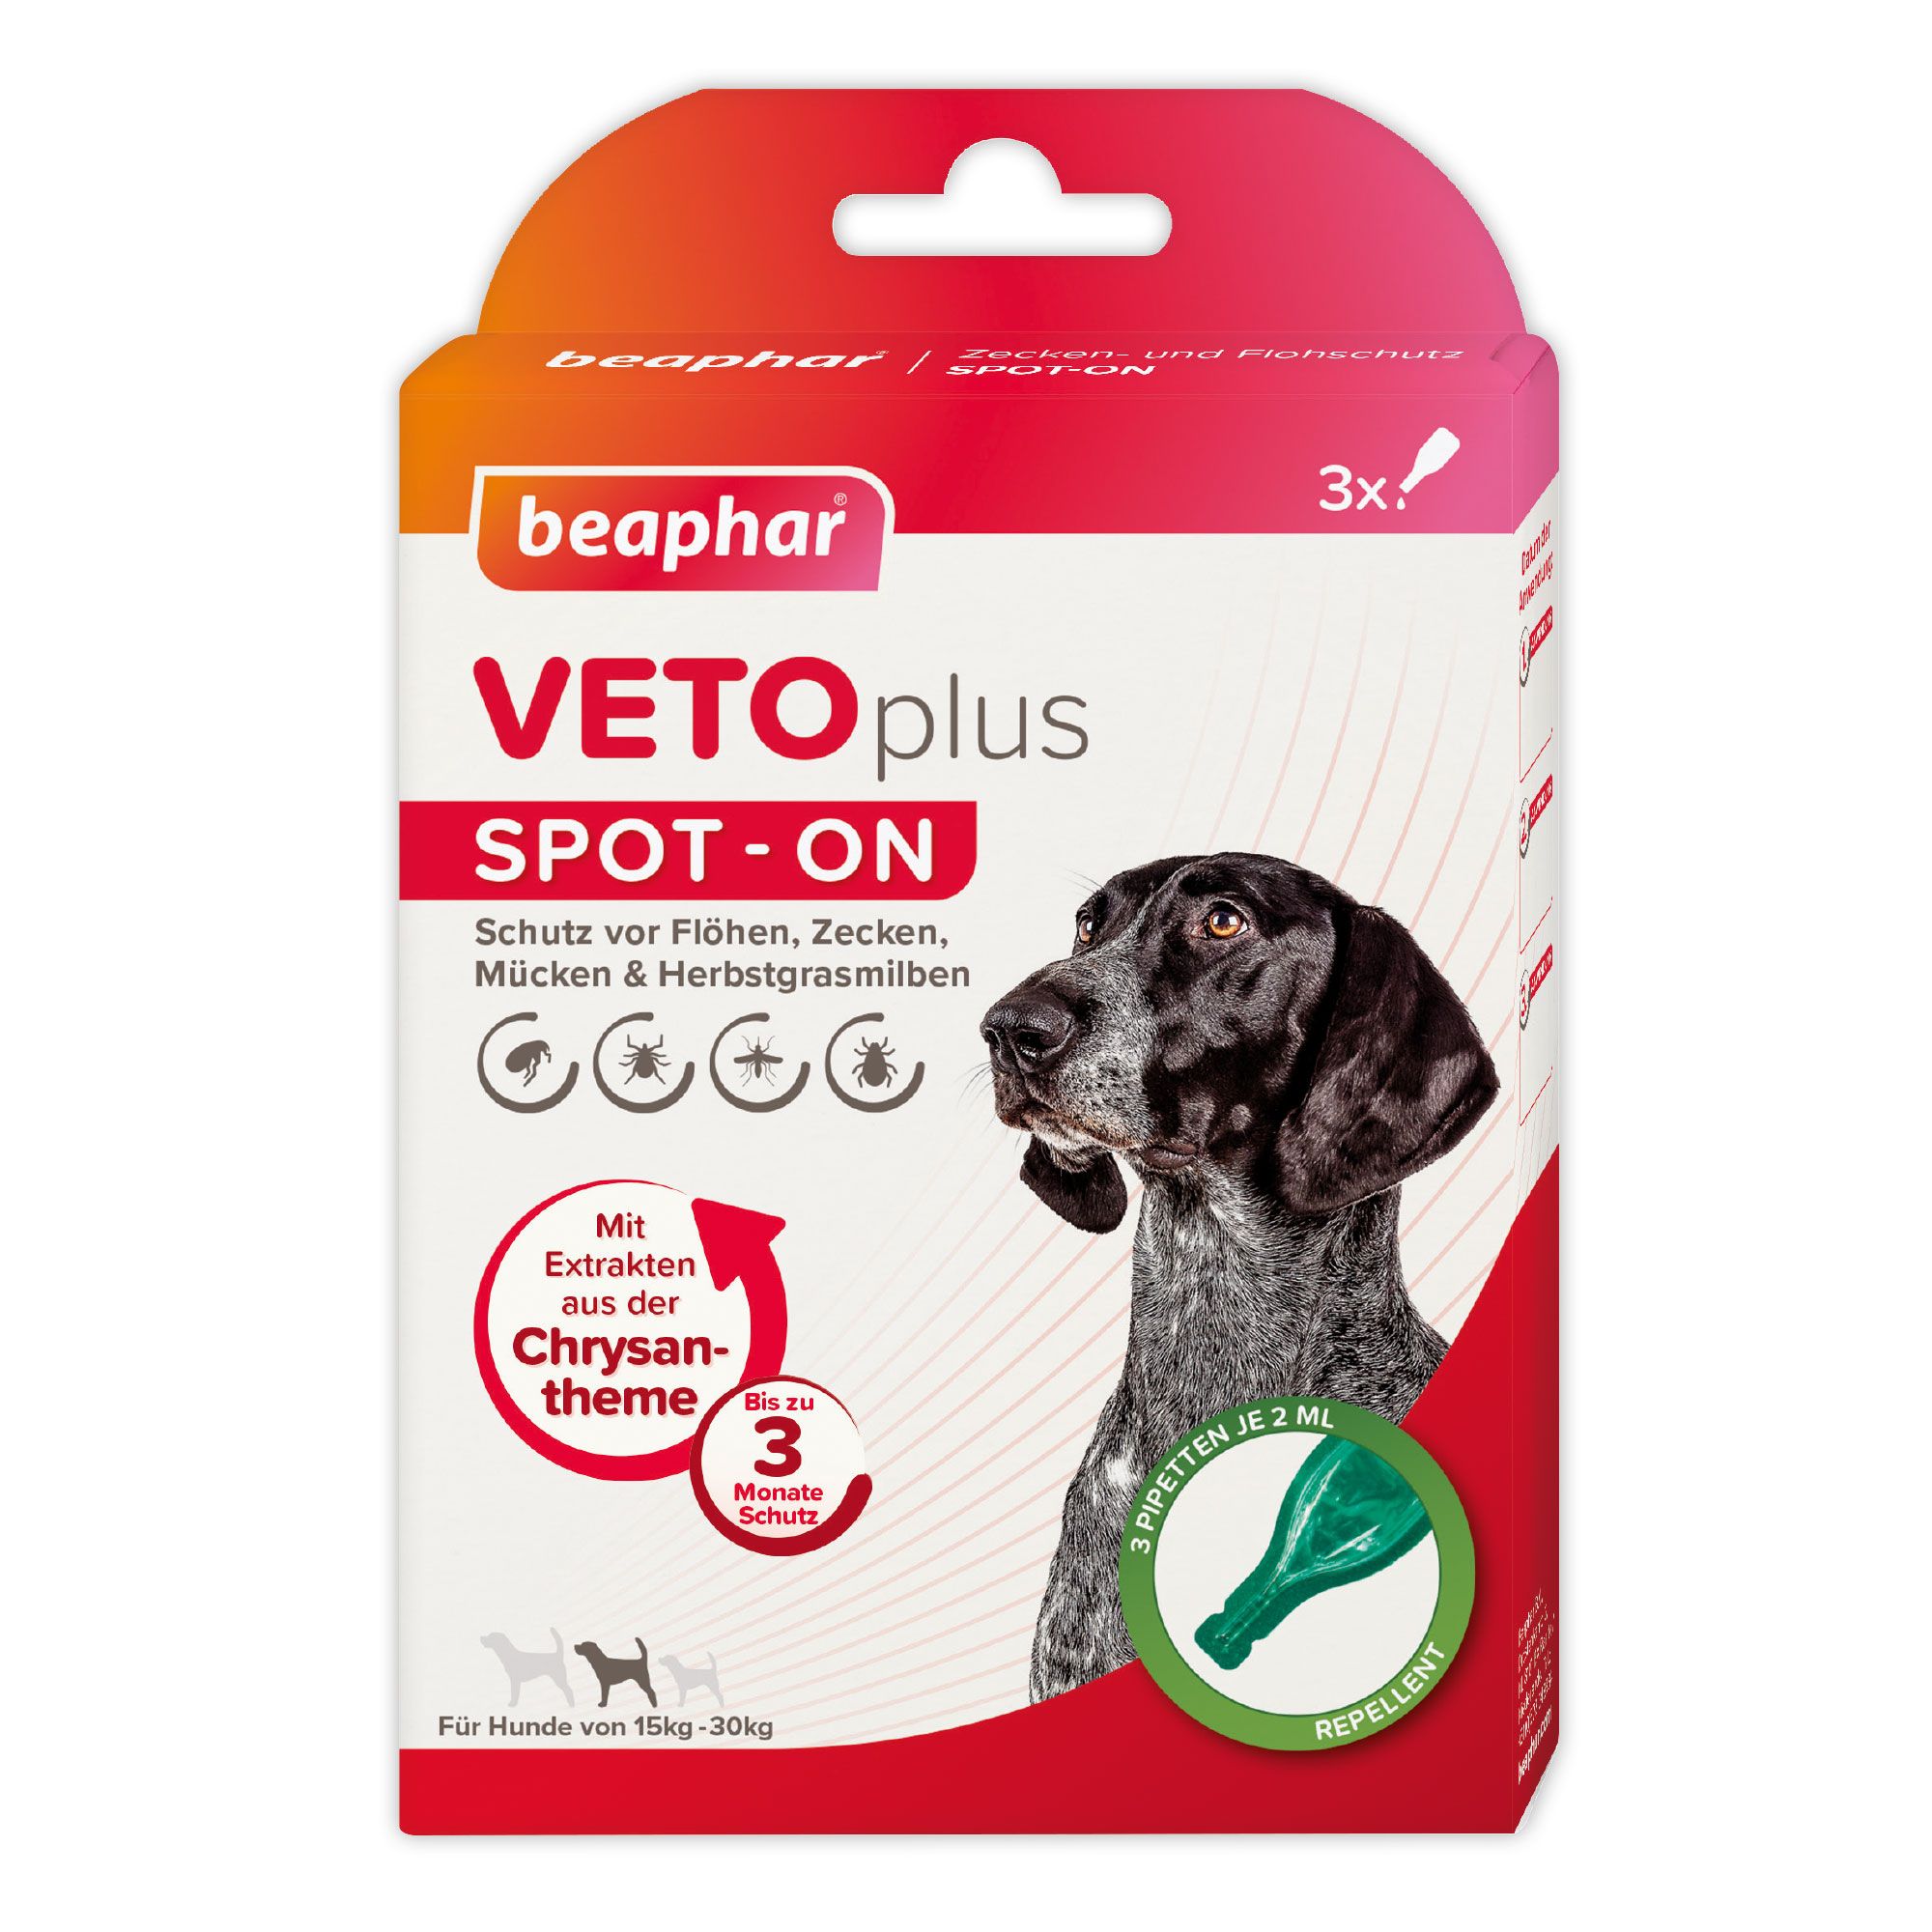 Beaphar VETOplus SPOT-ON für Hunde